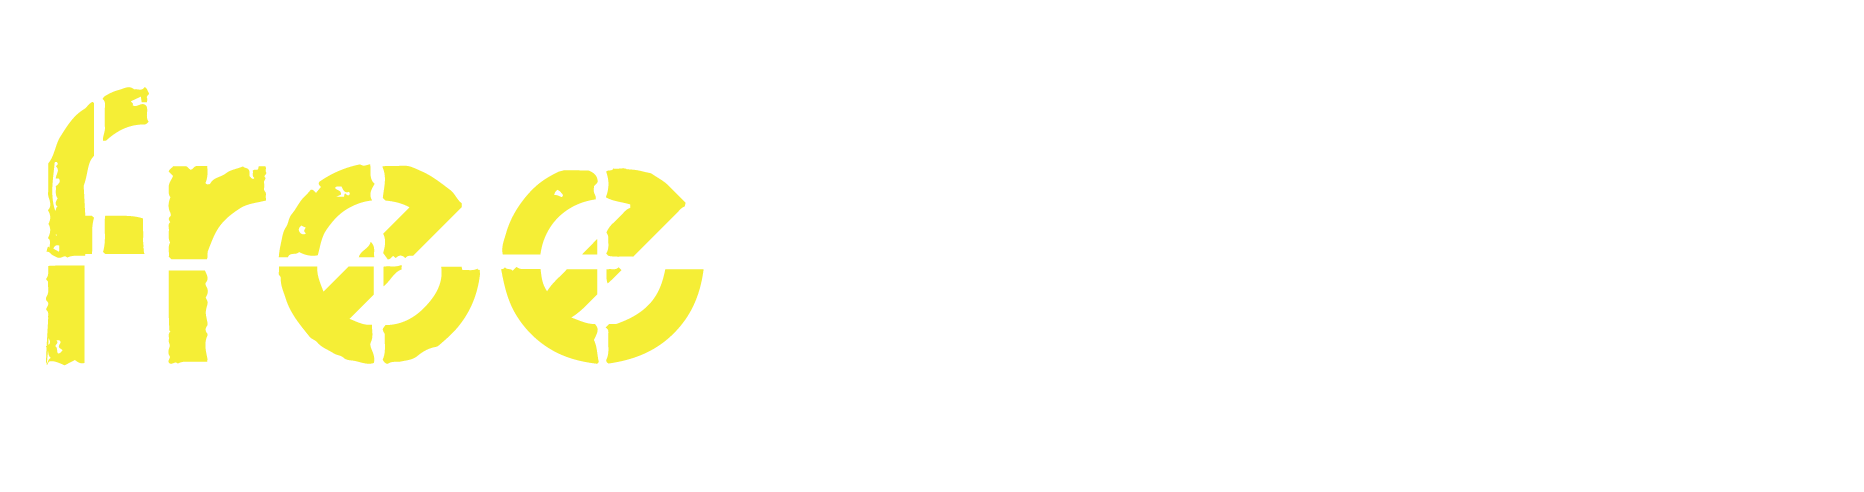 kicker Logo photo - 1